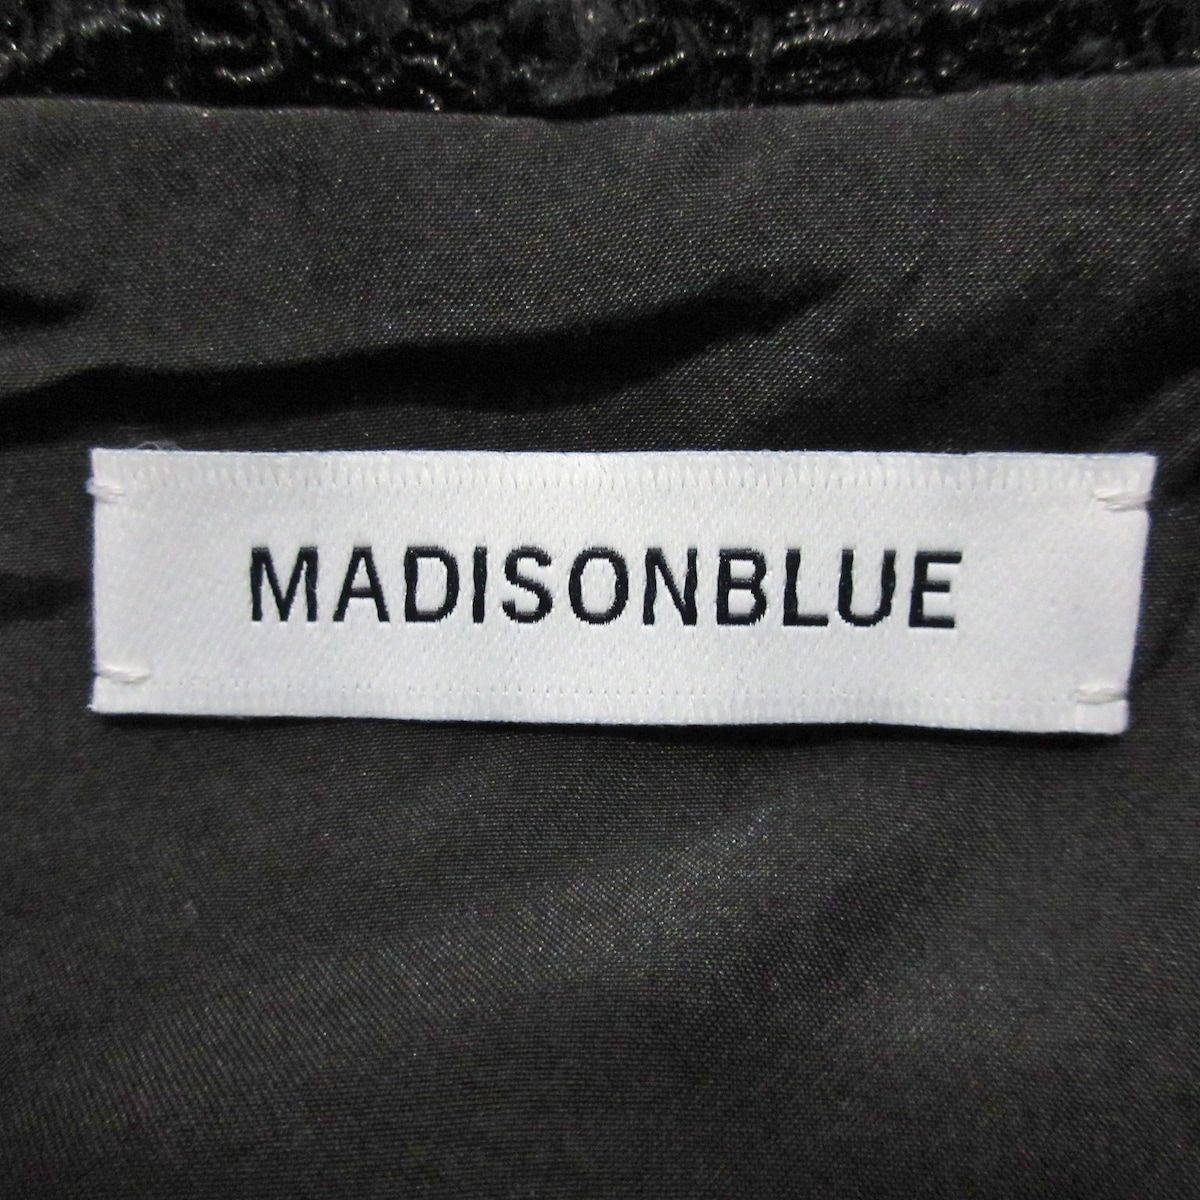 MADISON BLUE(マディソンブルー) コート サイズ00 XS レディース美品 - 黒 長袖/ツイード/フェイクパール/冬 綿、ナイロン